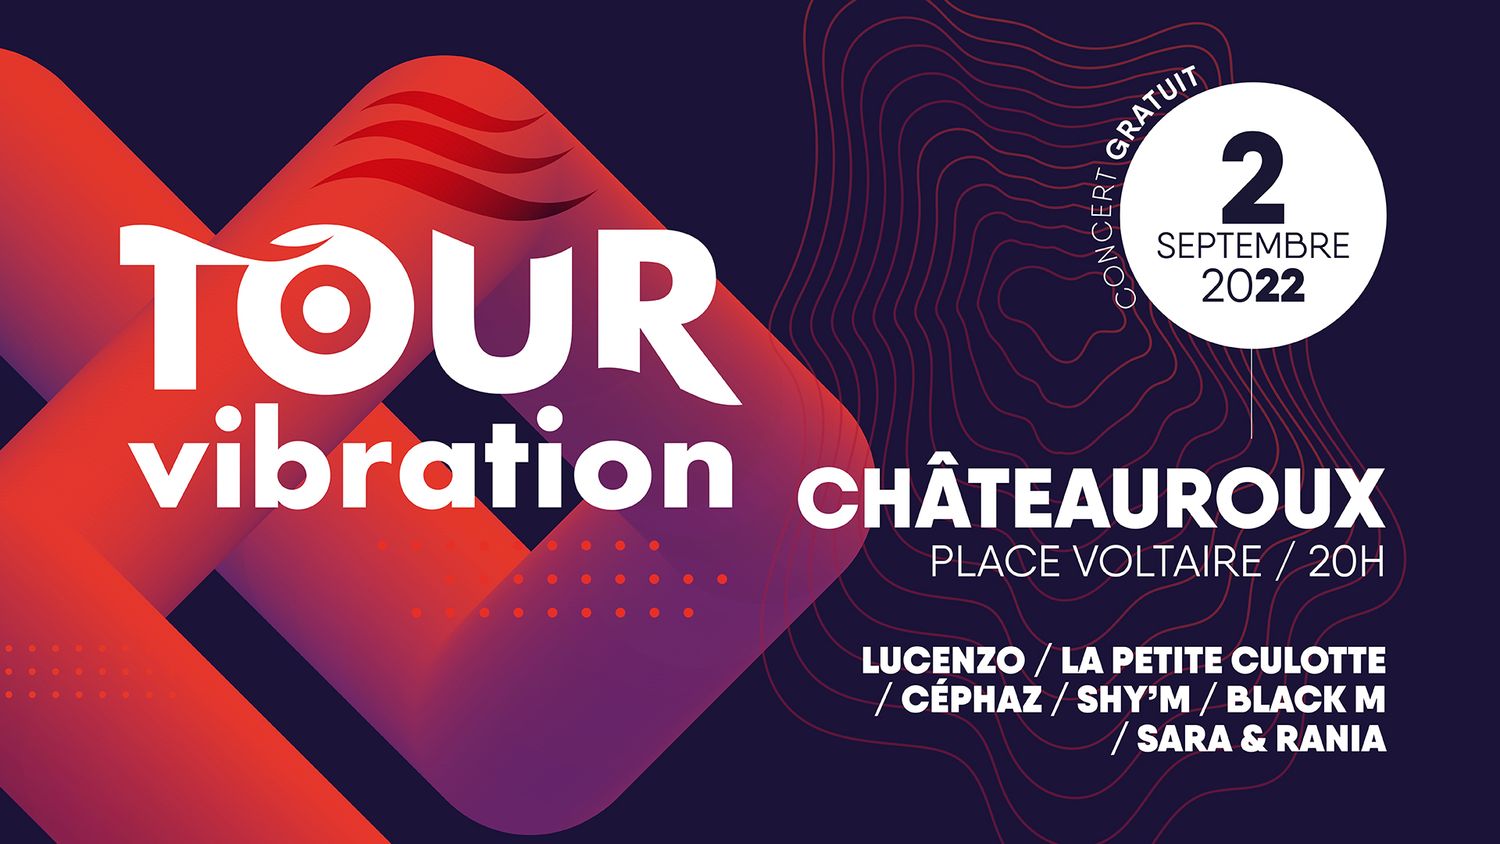 Tour Vibration 2022 : Châteauroux